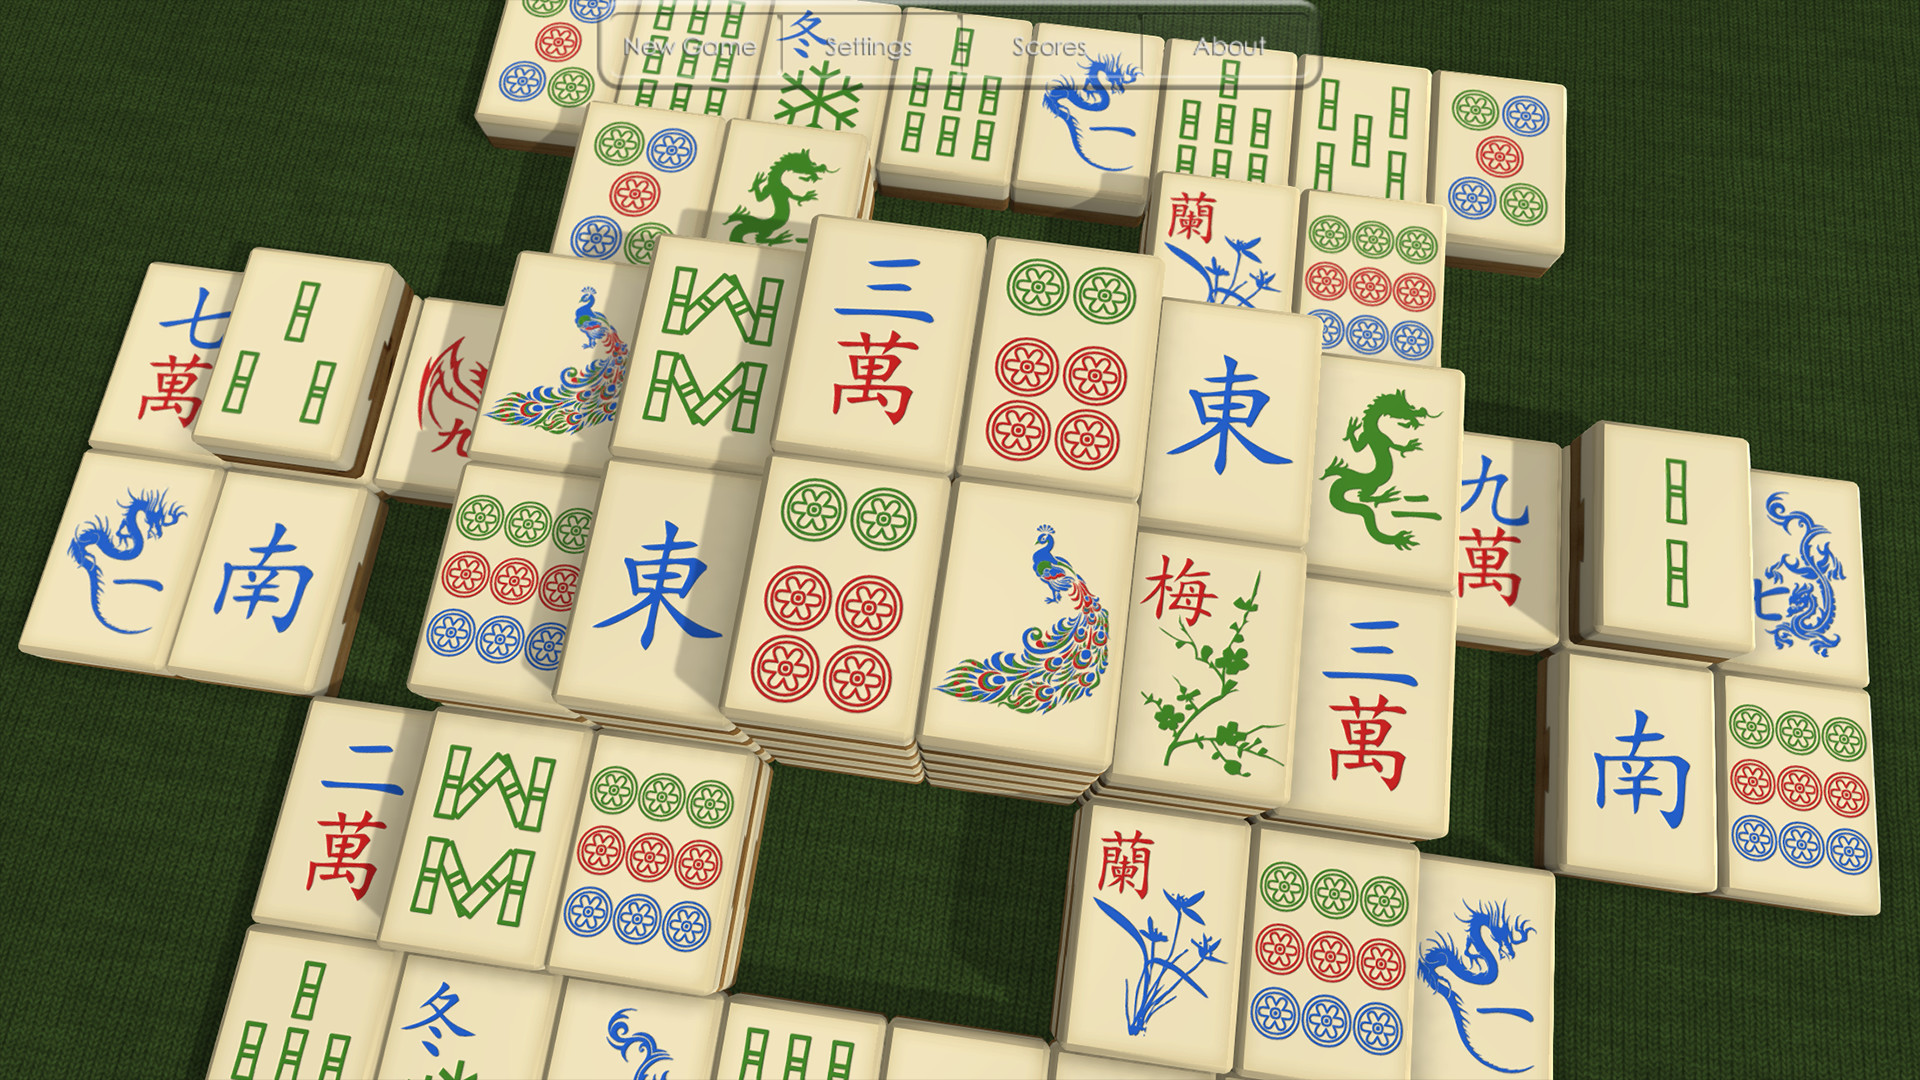 Китайские карты маджонг играть поиграть игровые автоматы бесплатно рулетка